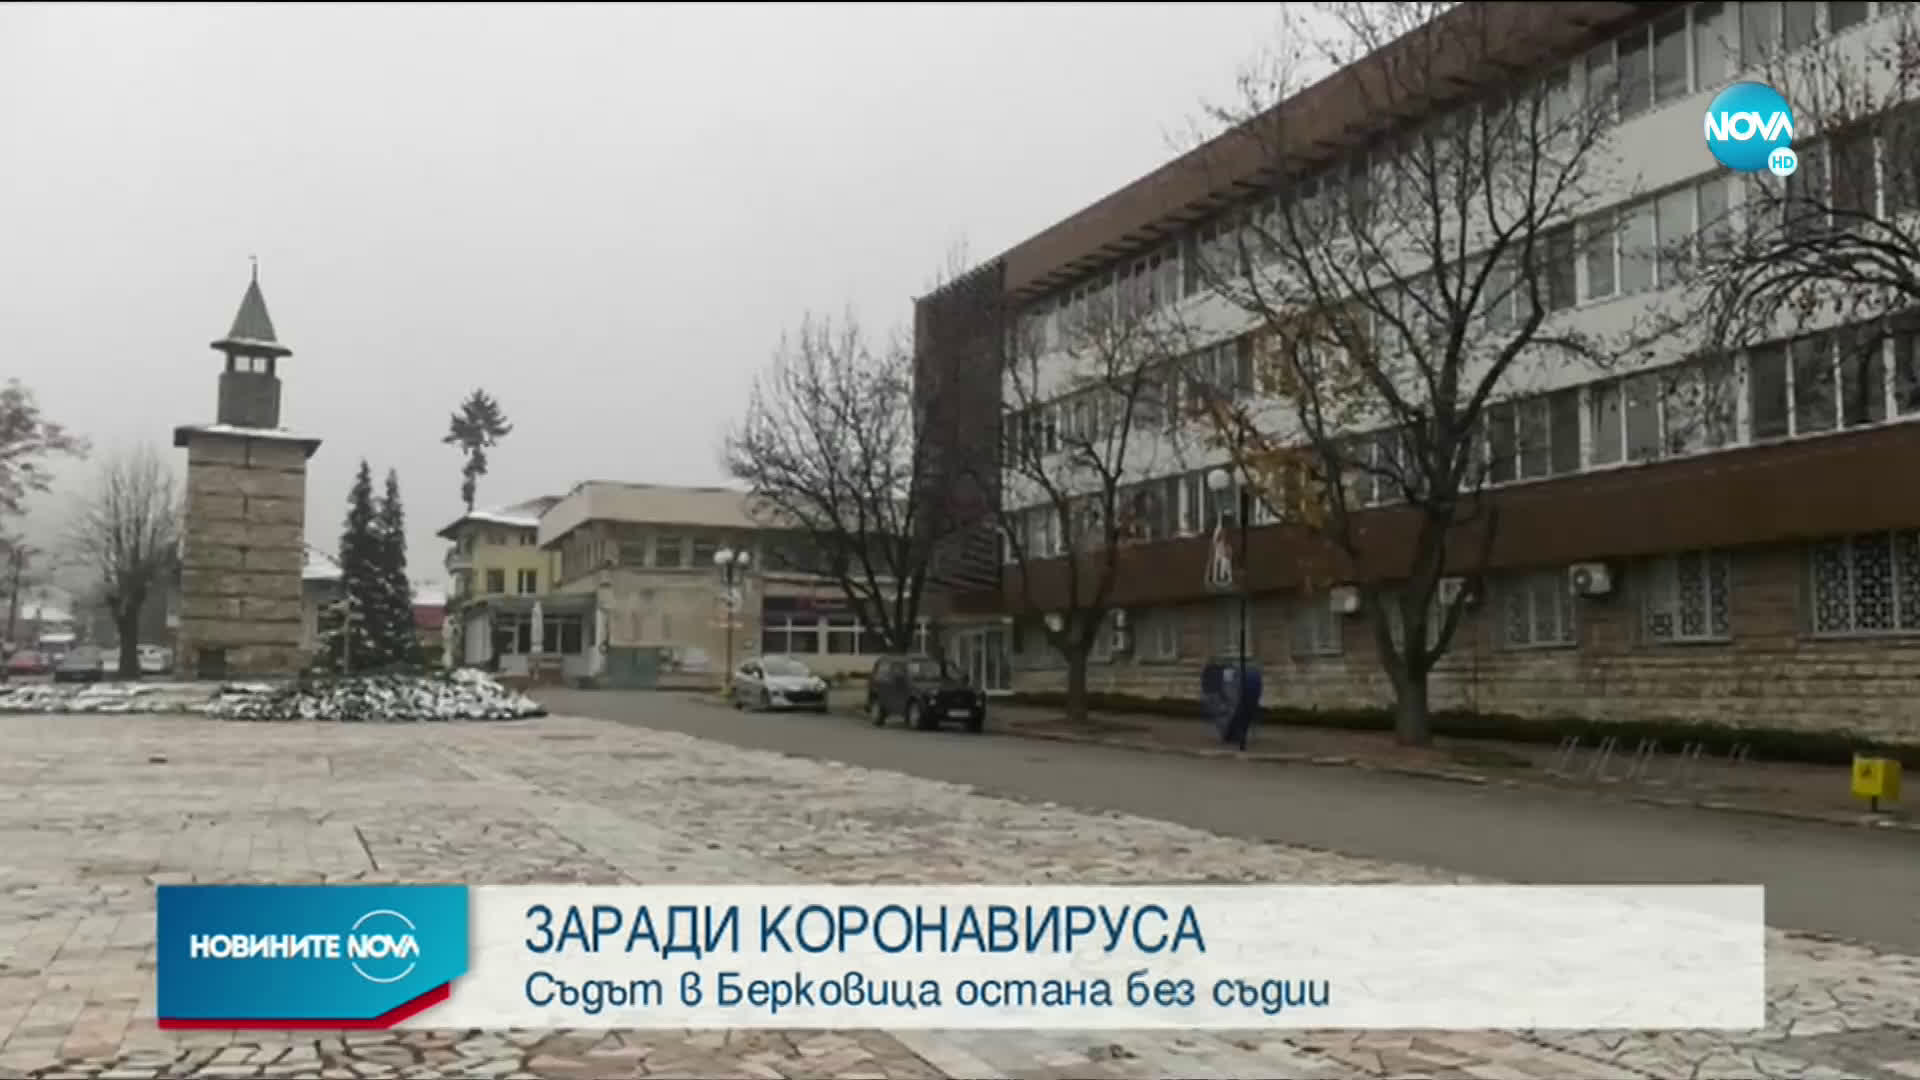 Съдът в Берковица остана без съдии